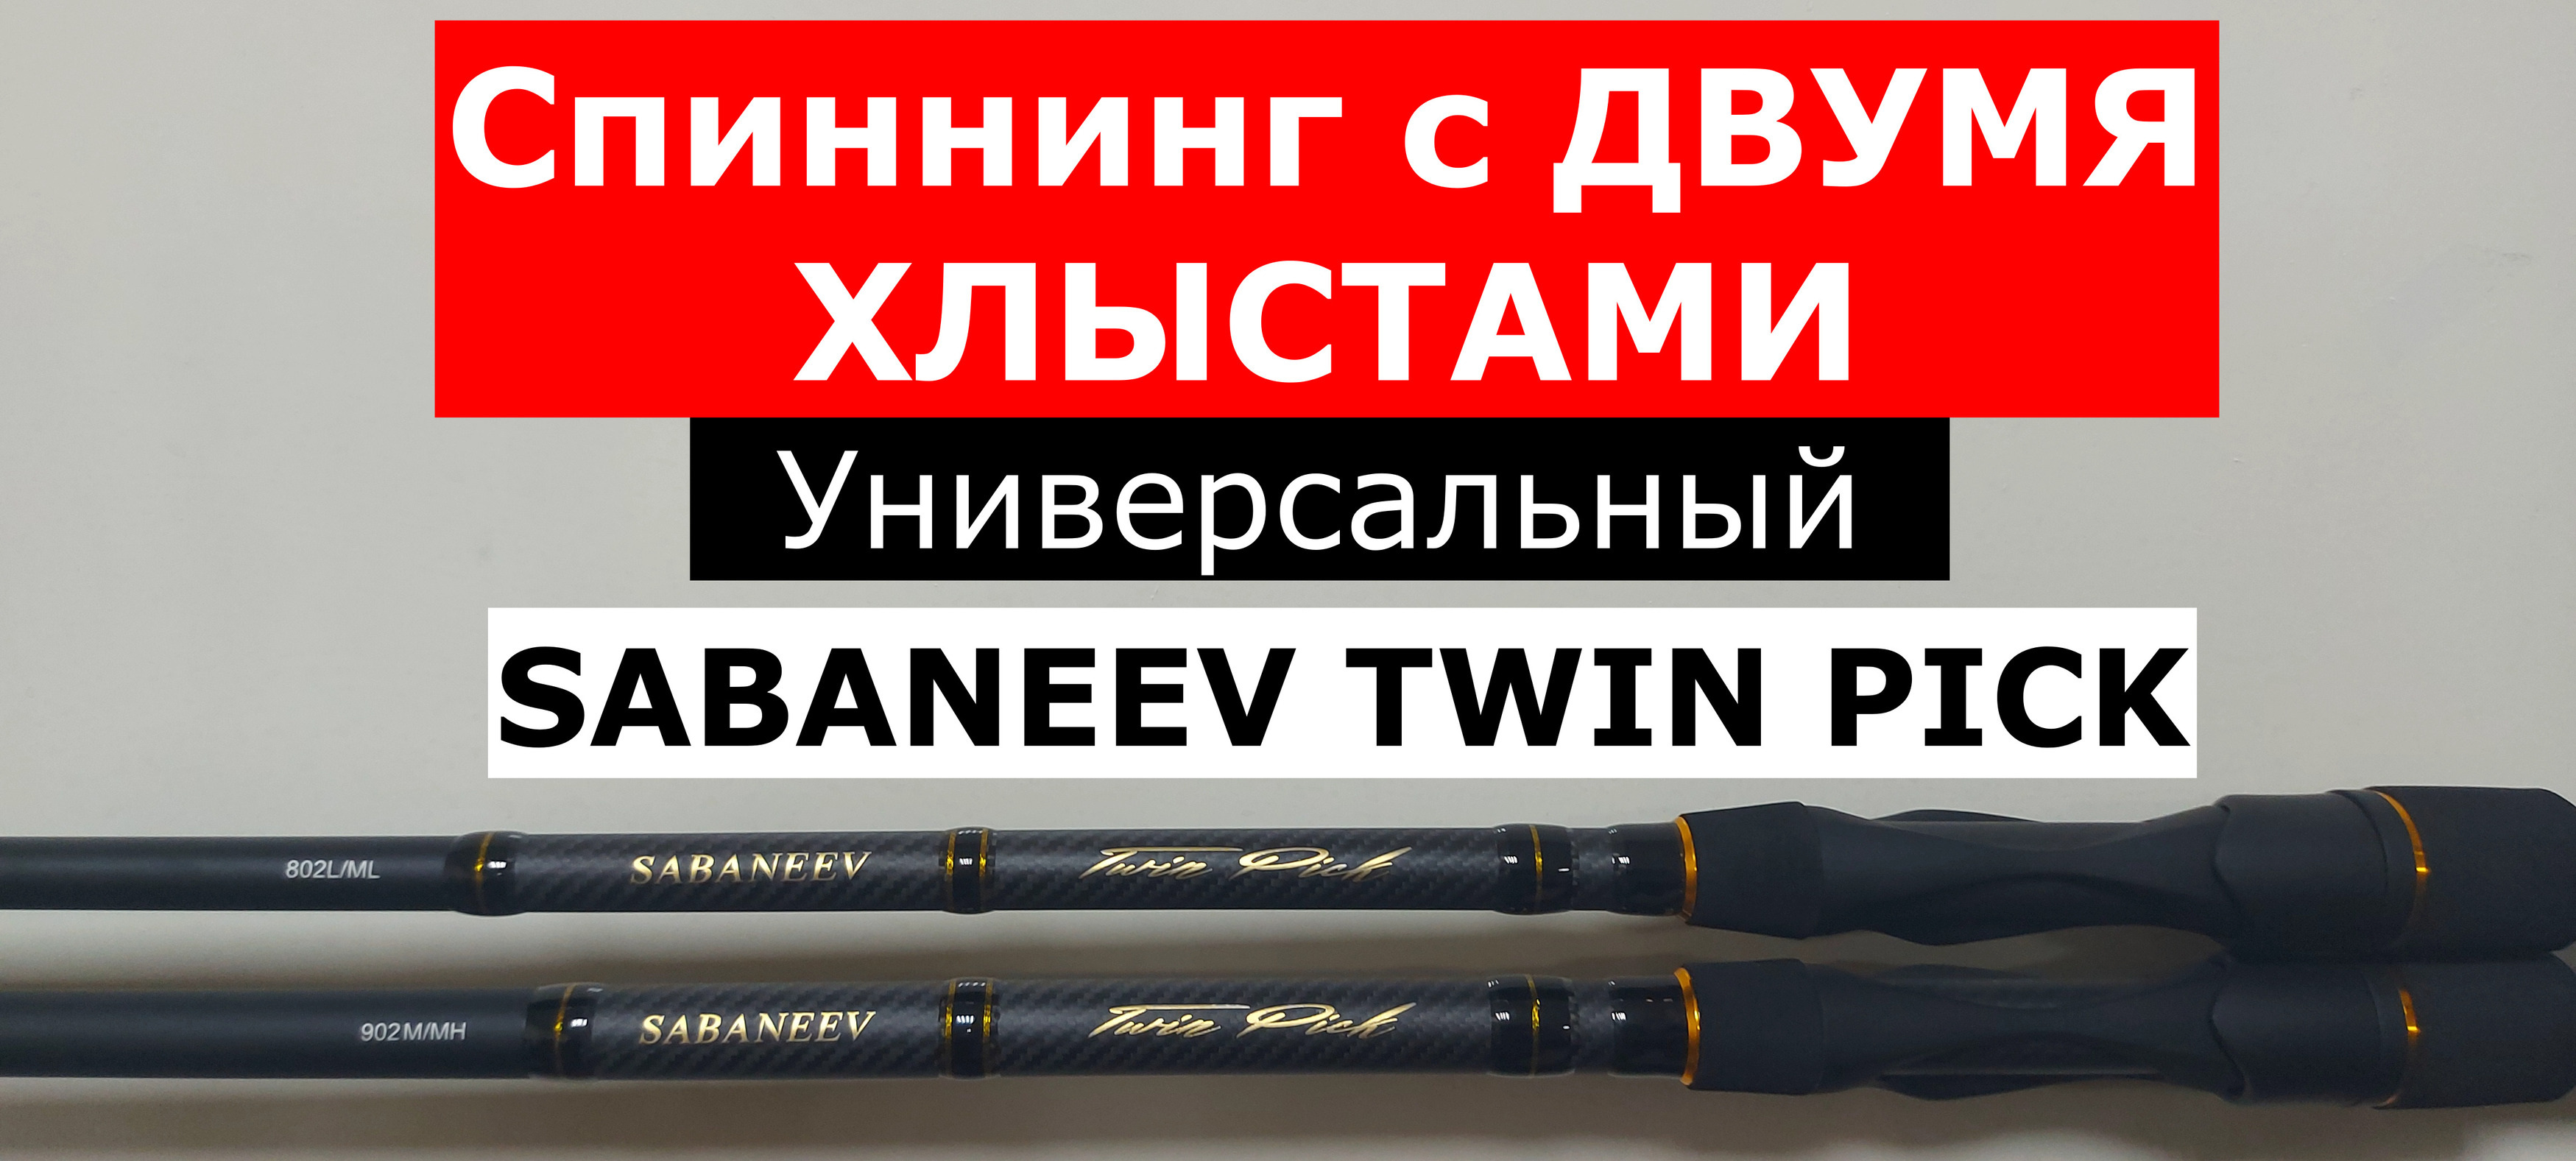 Спиннинг SABANEEV TWIN PICK-ДВА в ОДНОМ! Обзор серии УНИВЕРСАЛЬНЫХ спиннингов с двумя хлыстами.